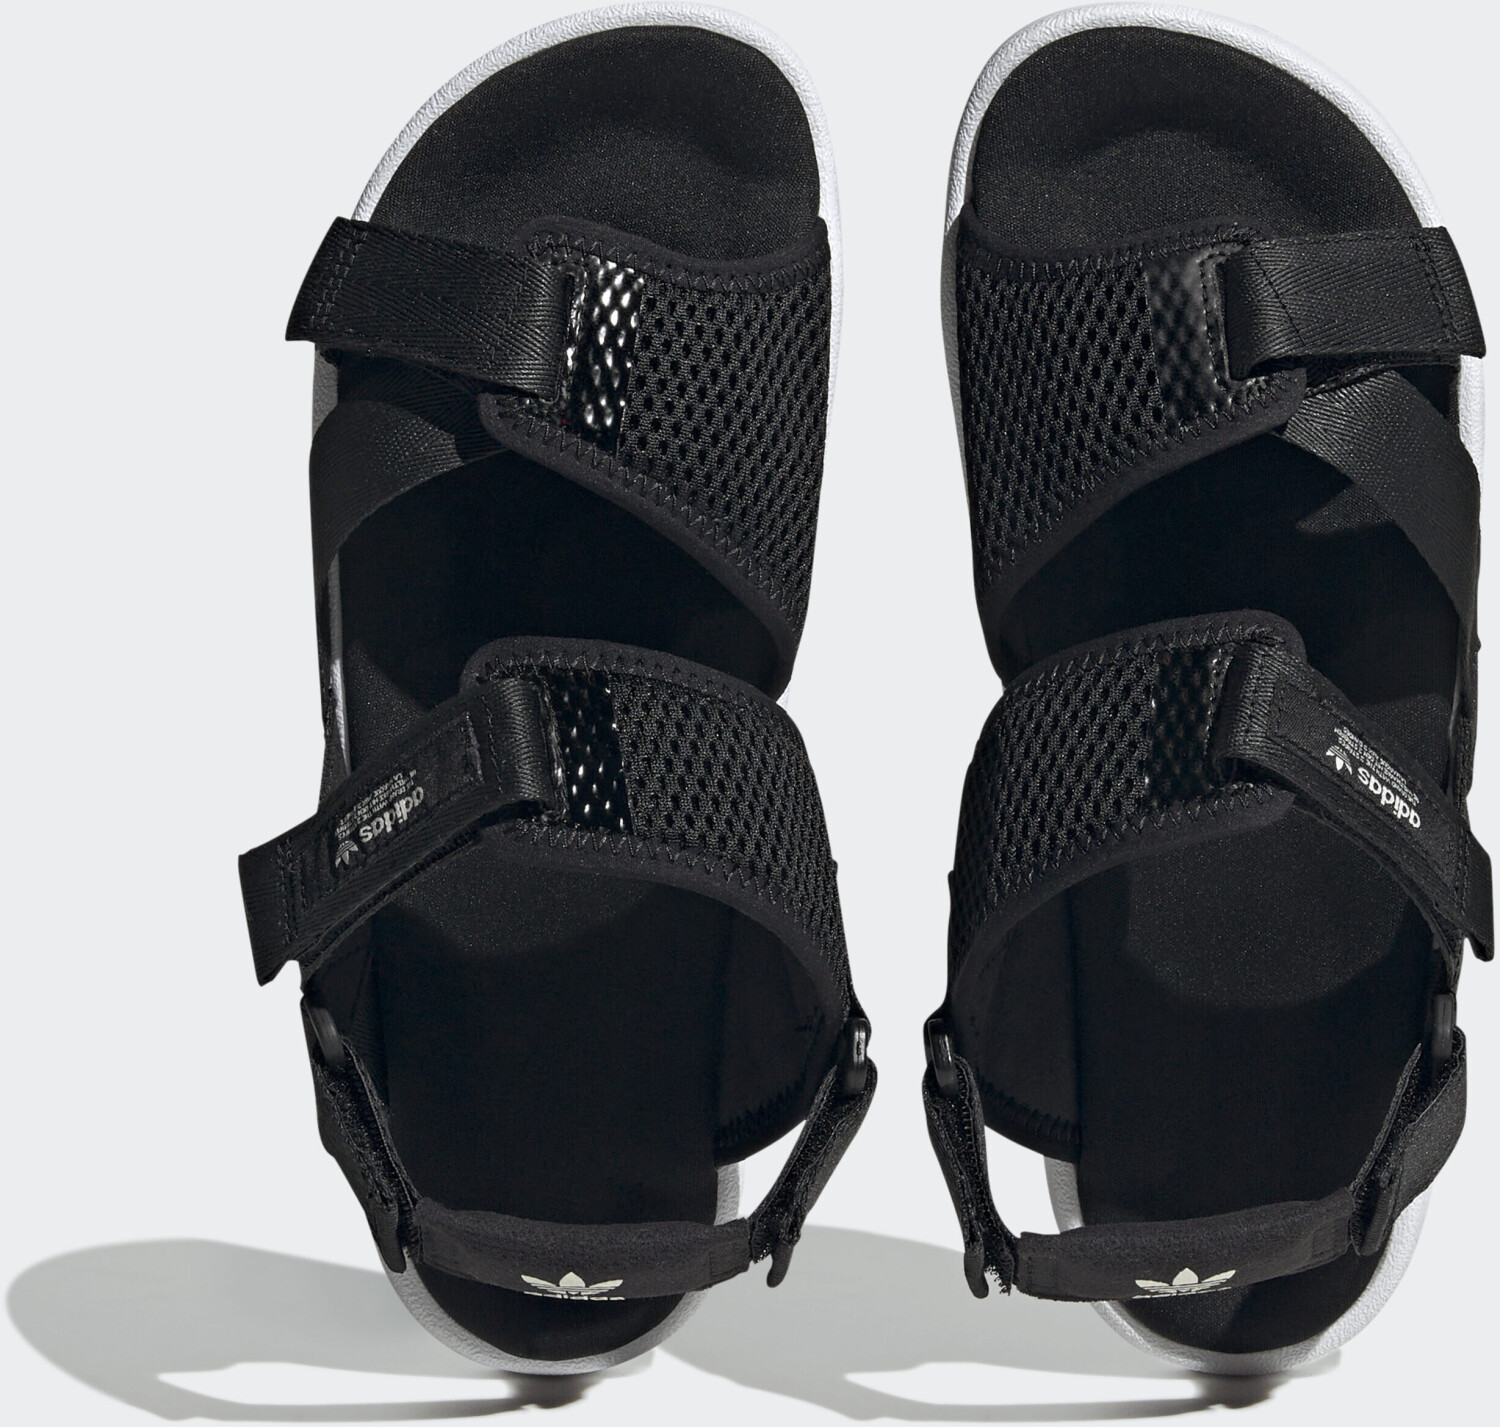 Sandals HP2184 bei Adilette Preisvergleich schwarz Adventure 42,25 ab Adidas € |